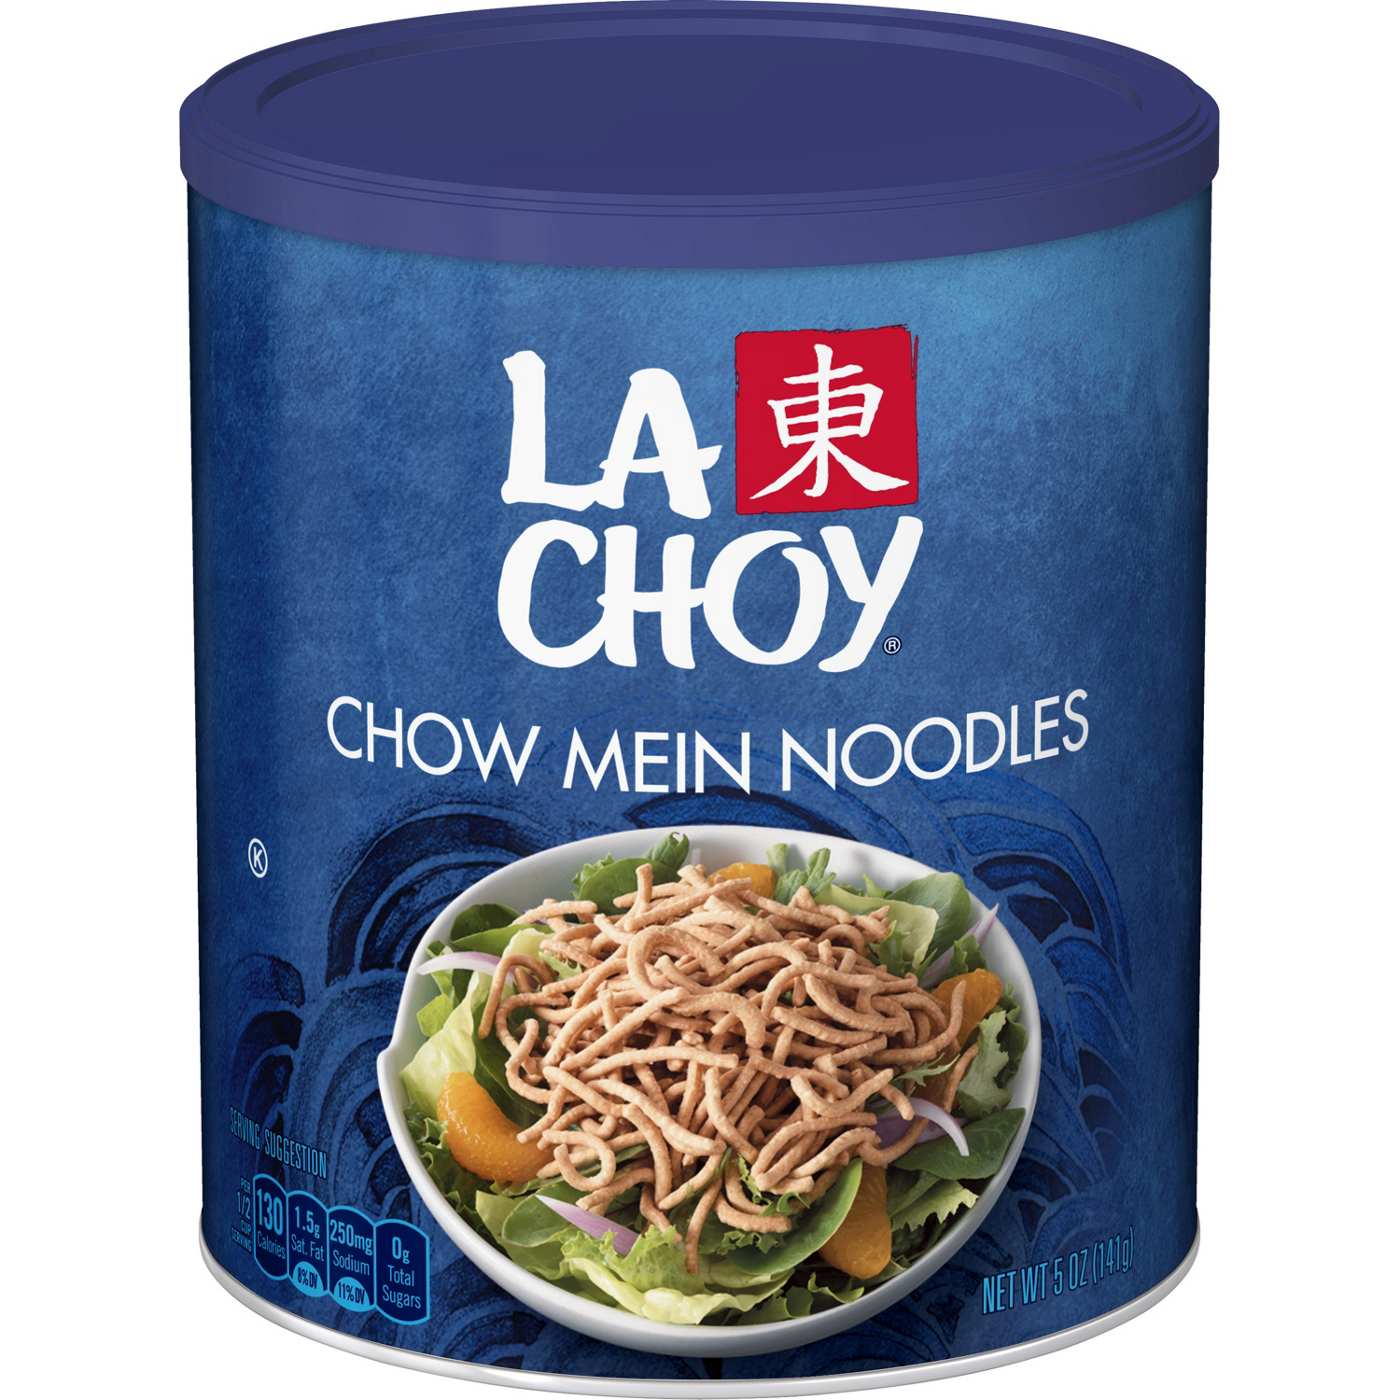 La Choy Chow Mein Noodles; image 1 of 5